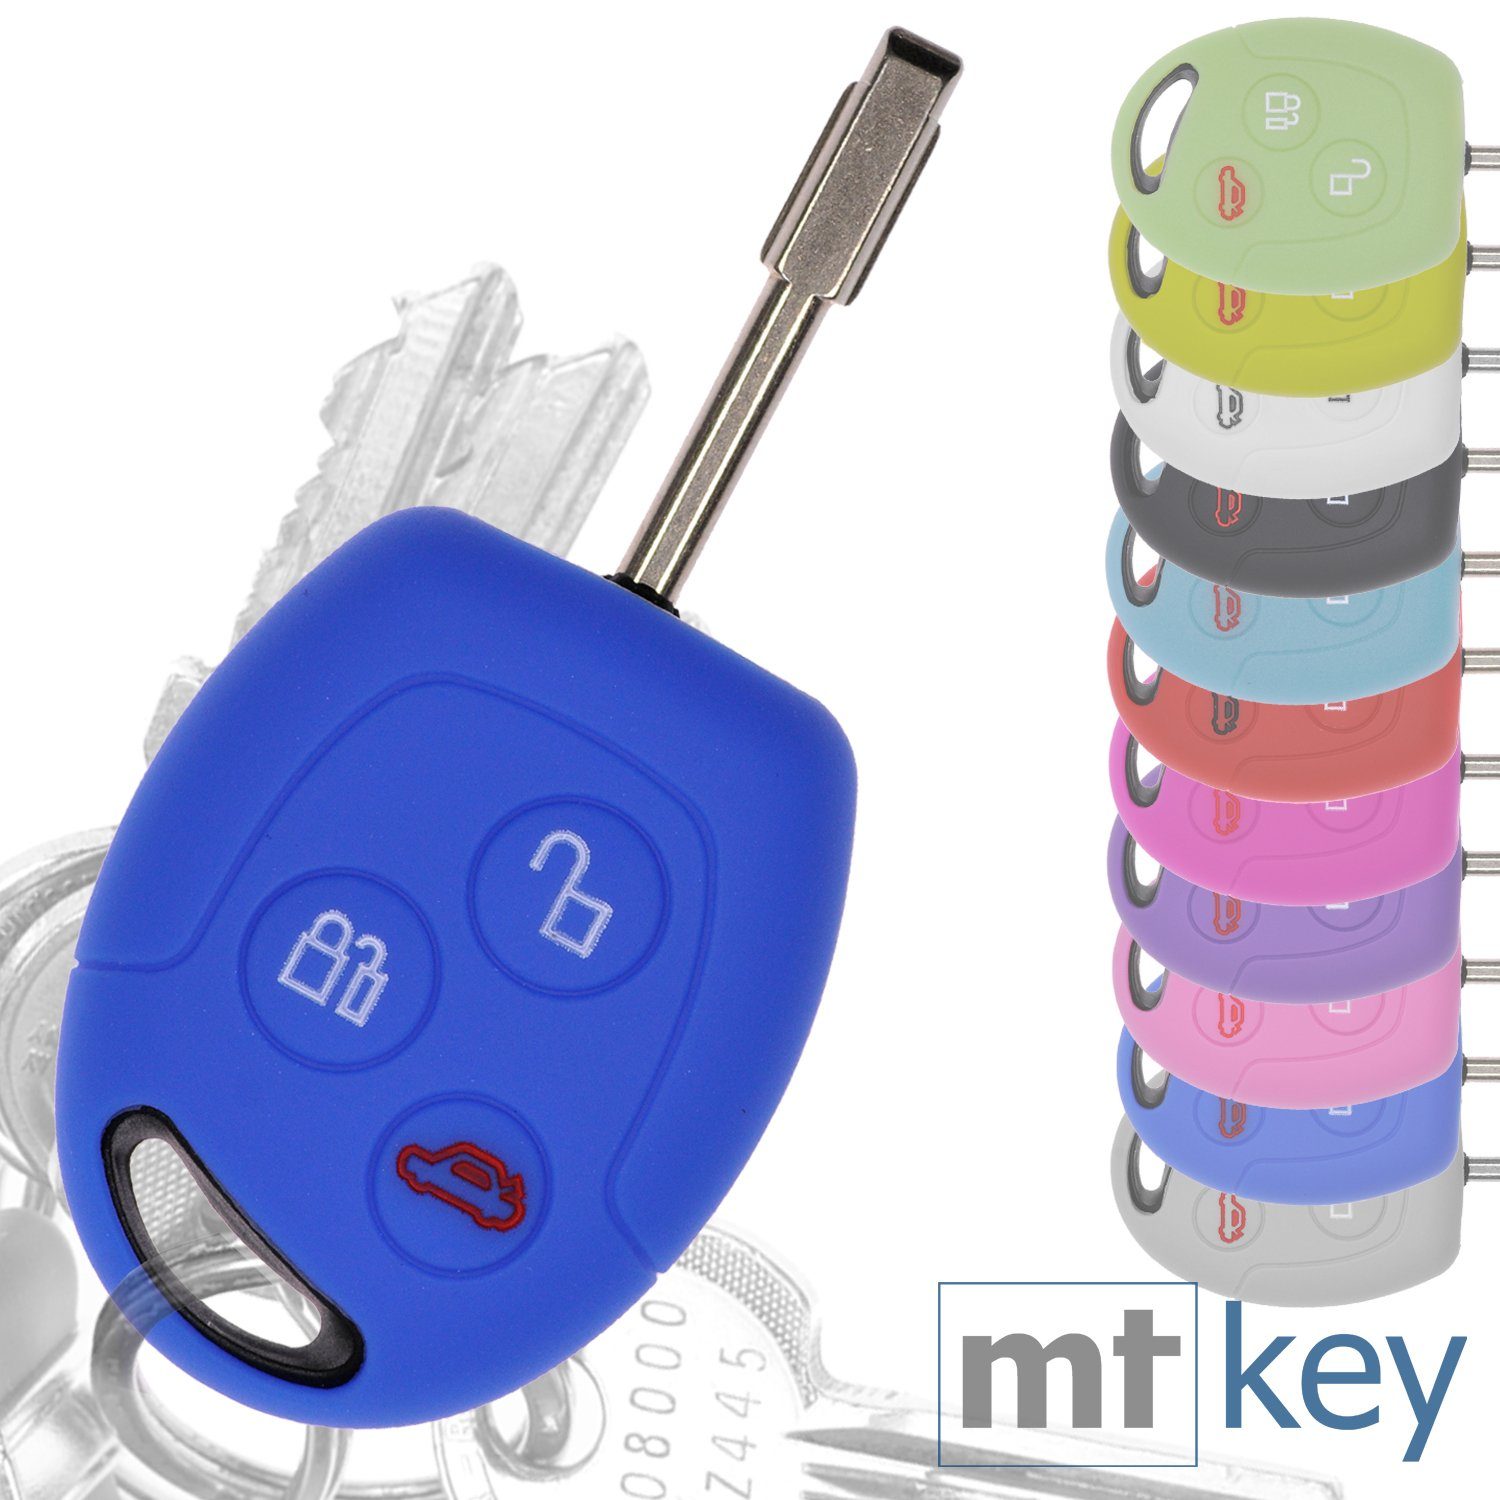 II Fiesta Knopf Blau, Transit Galaxy Schutzhülle S-MAX Ford VI Fusion Softcase mt-key Autoschlüssel für Mondeo Focus Schlüsseltasche 3 Silikon